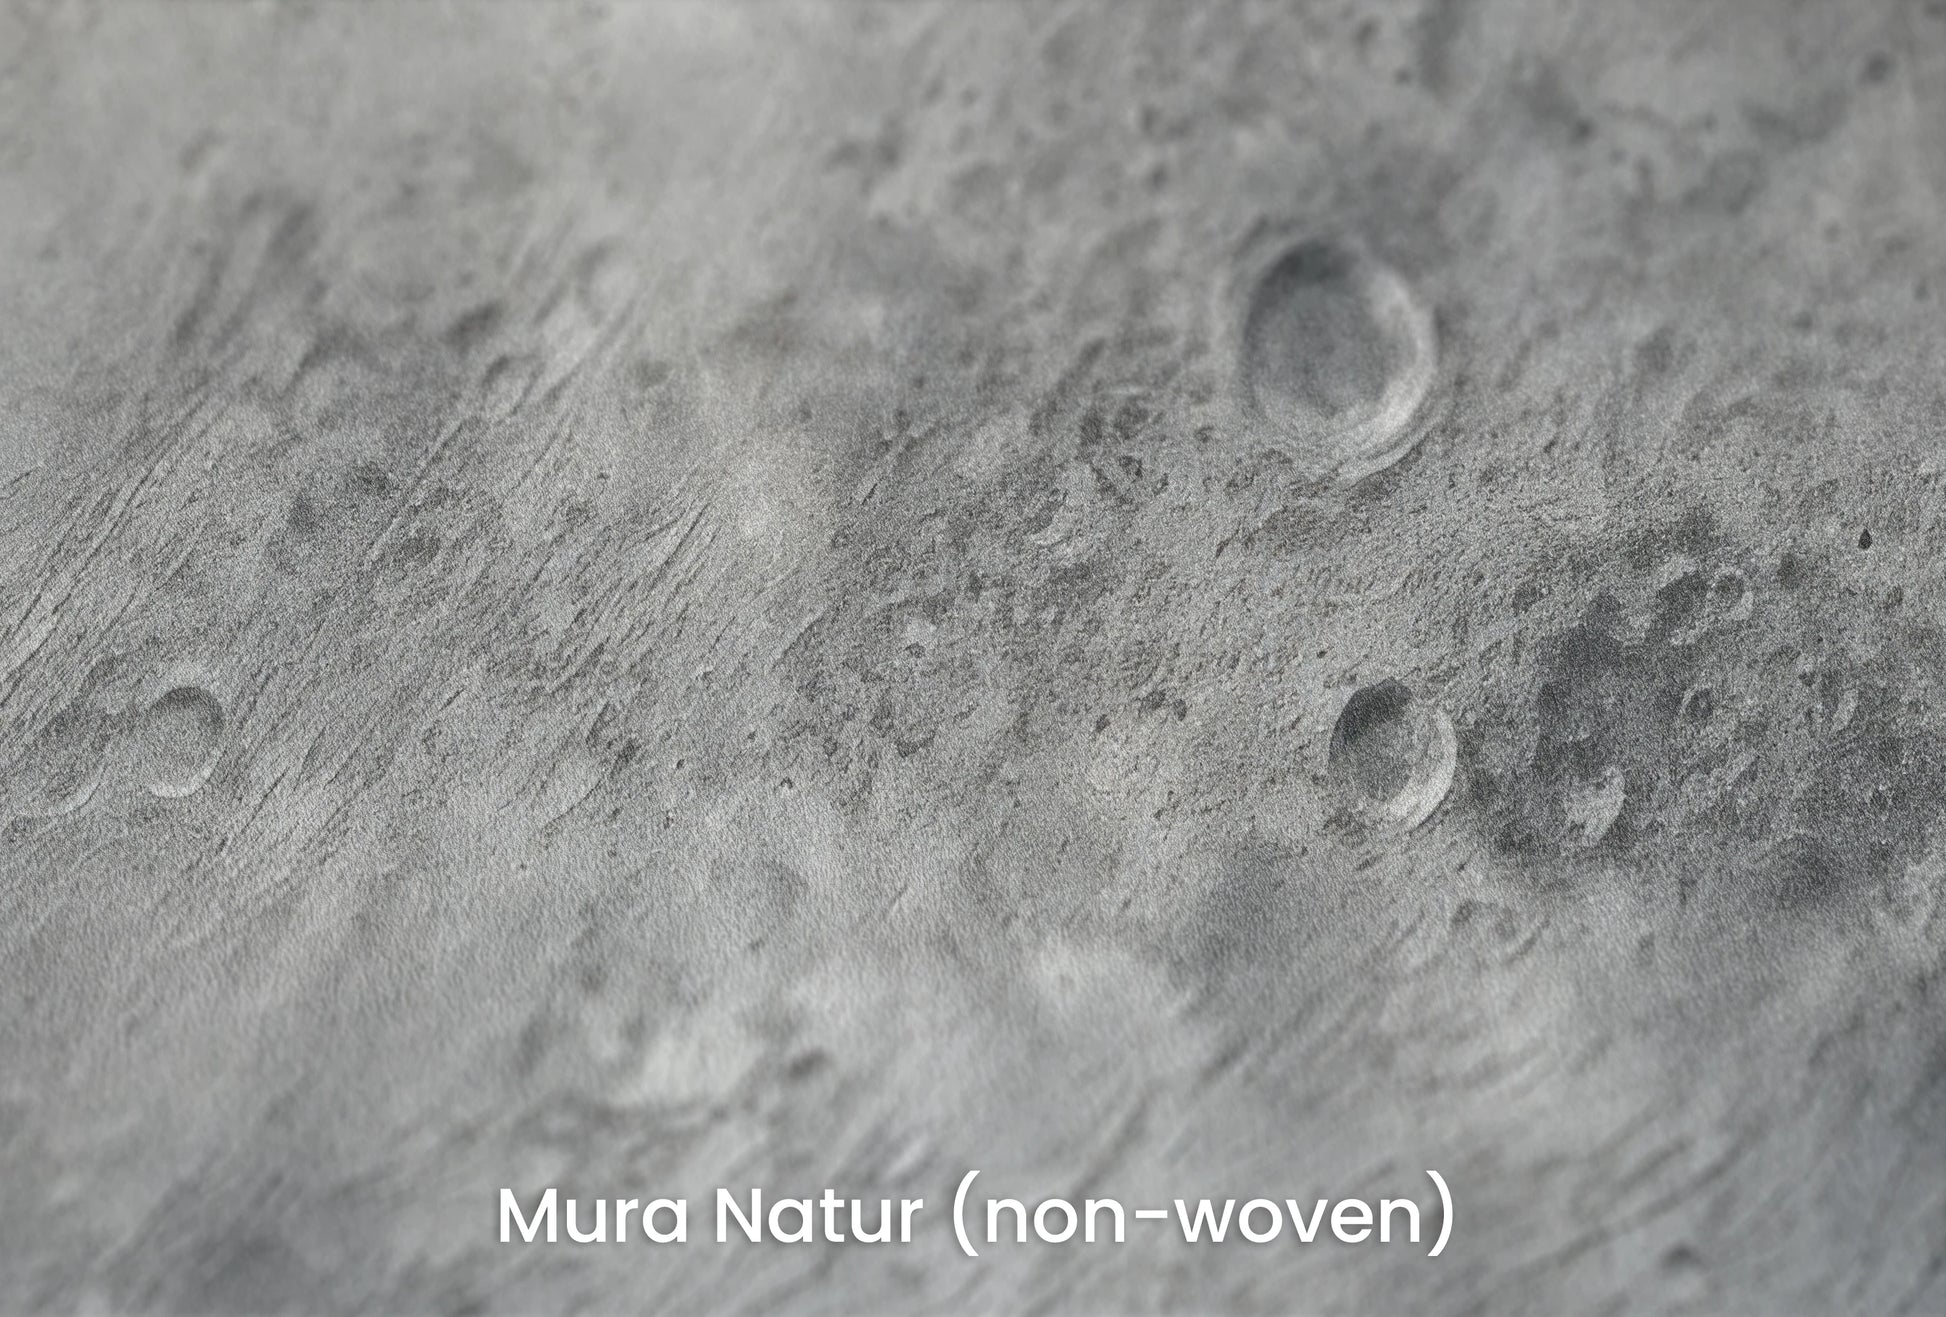 Zbliżenie na artystyczną fototapetę o nazwie Lunar Majesty na podłożu Mura Natur (non-woven) - naturalne i ekologiczne podłoże.